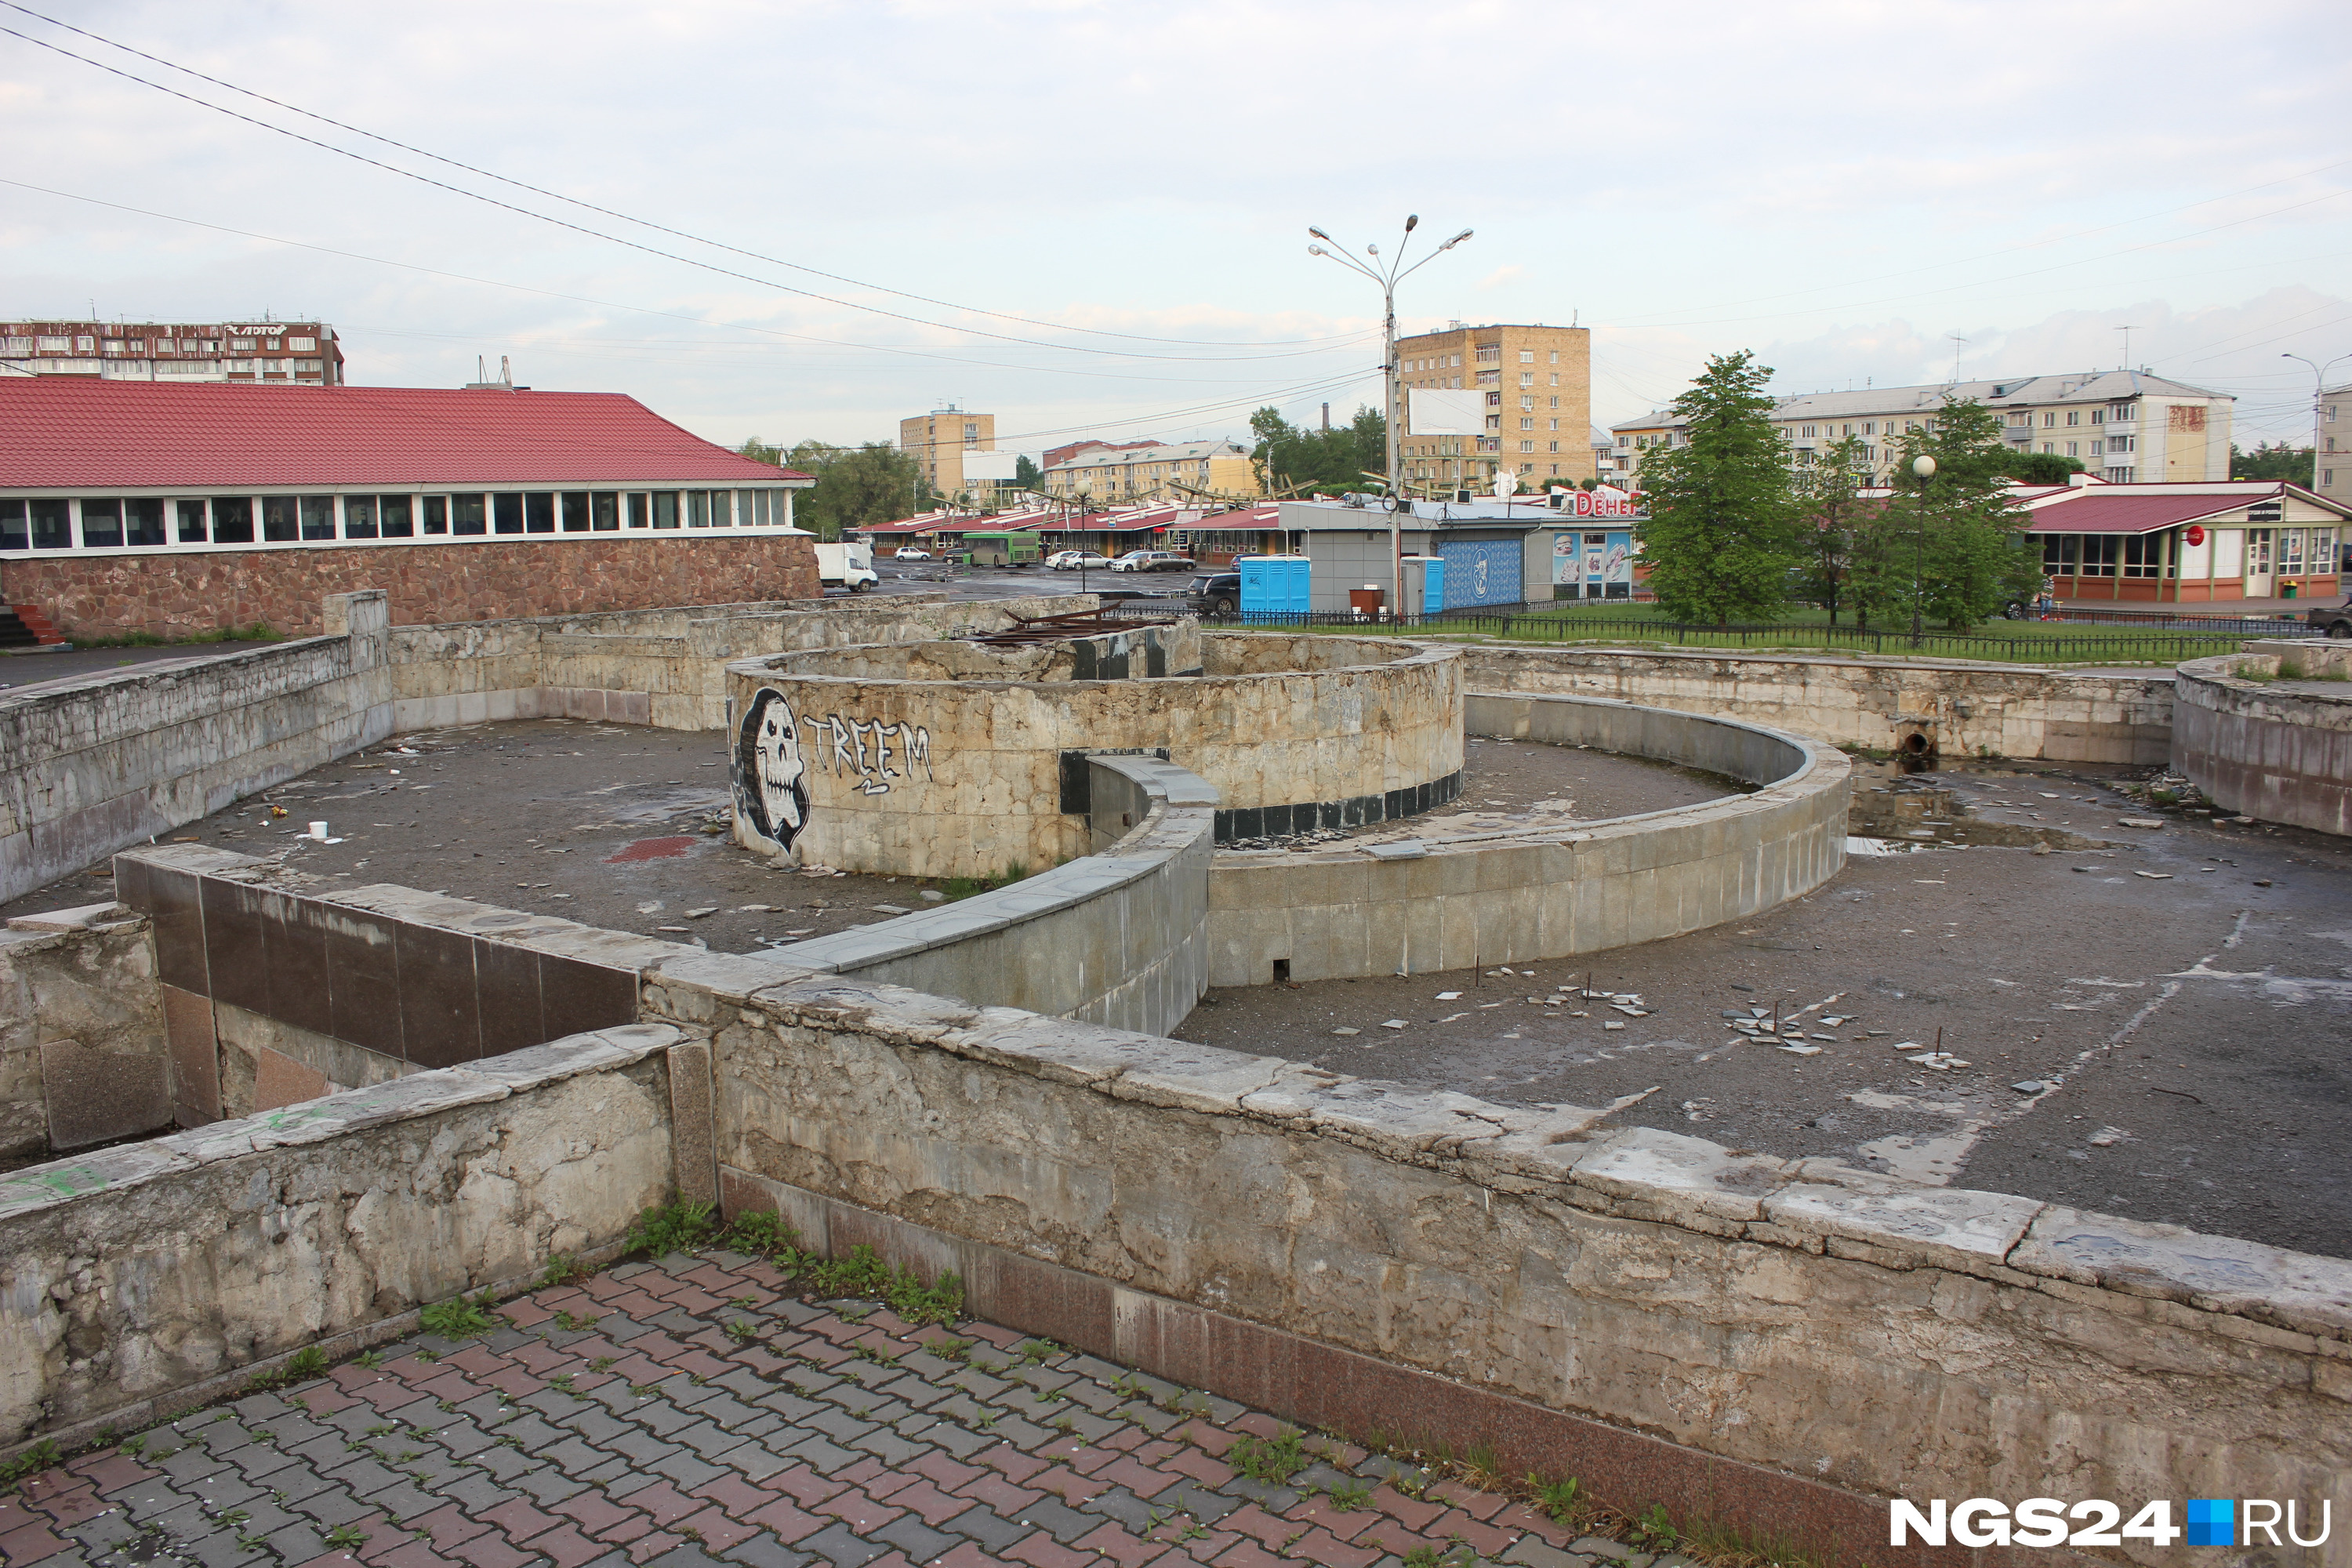 Источник в администрации Свердловского района признался, что отремонтировать фонтан нельзя именно потому, что земля под ним в аренде. Из-за этого скульптуру «Похищение Европы» пришлось перенести на другую сторону площади 